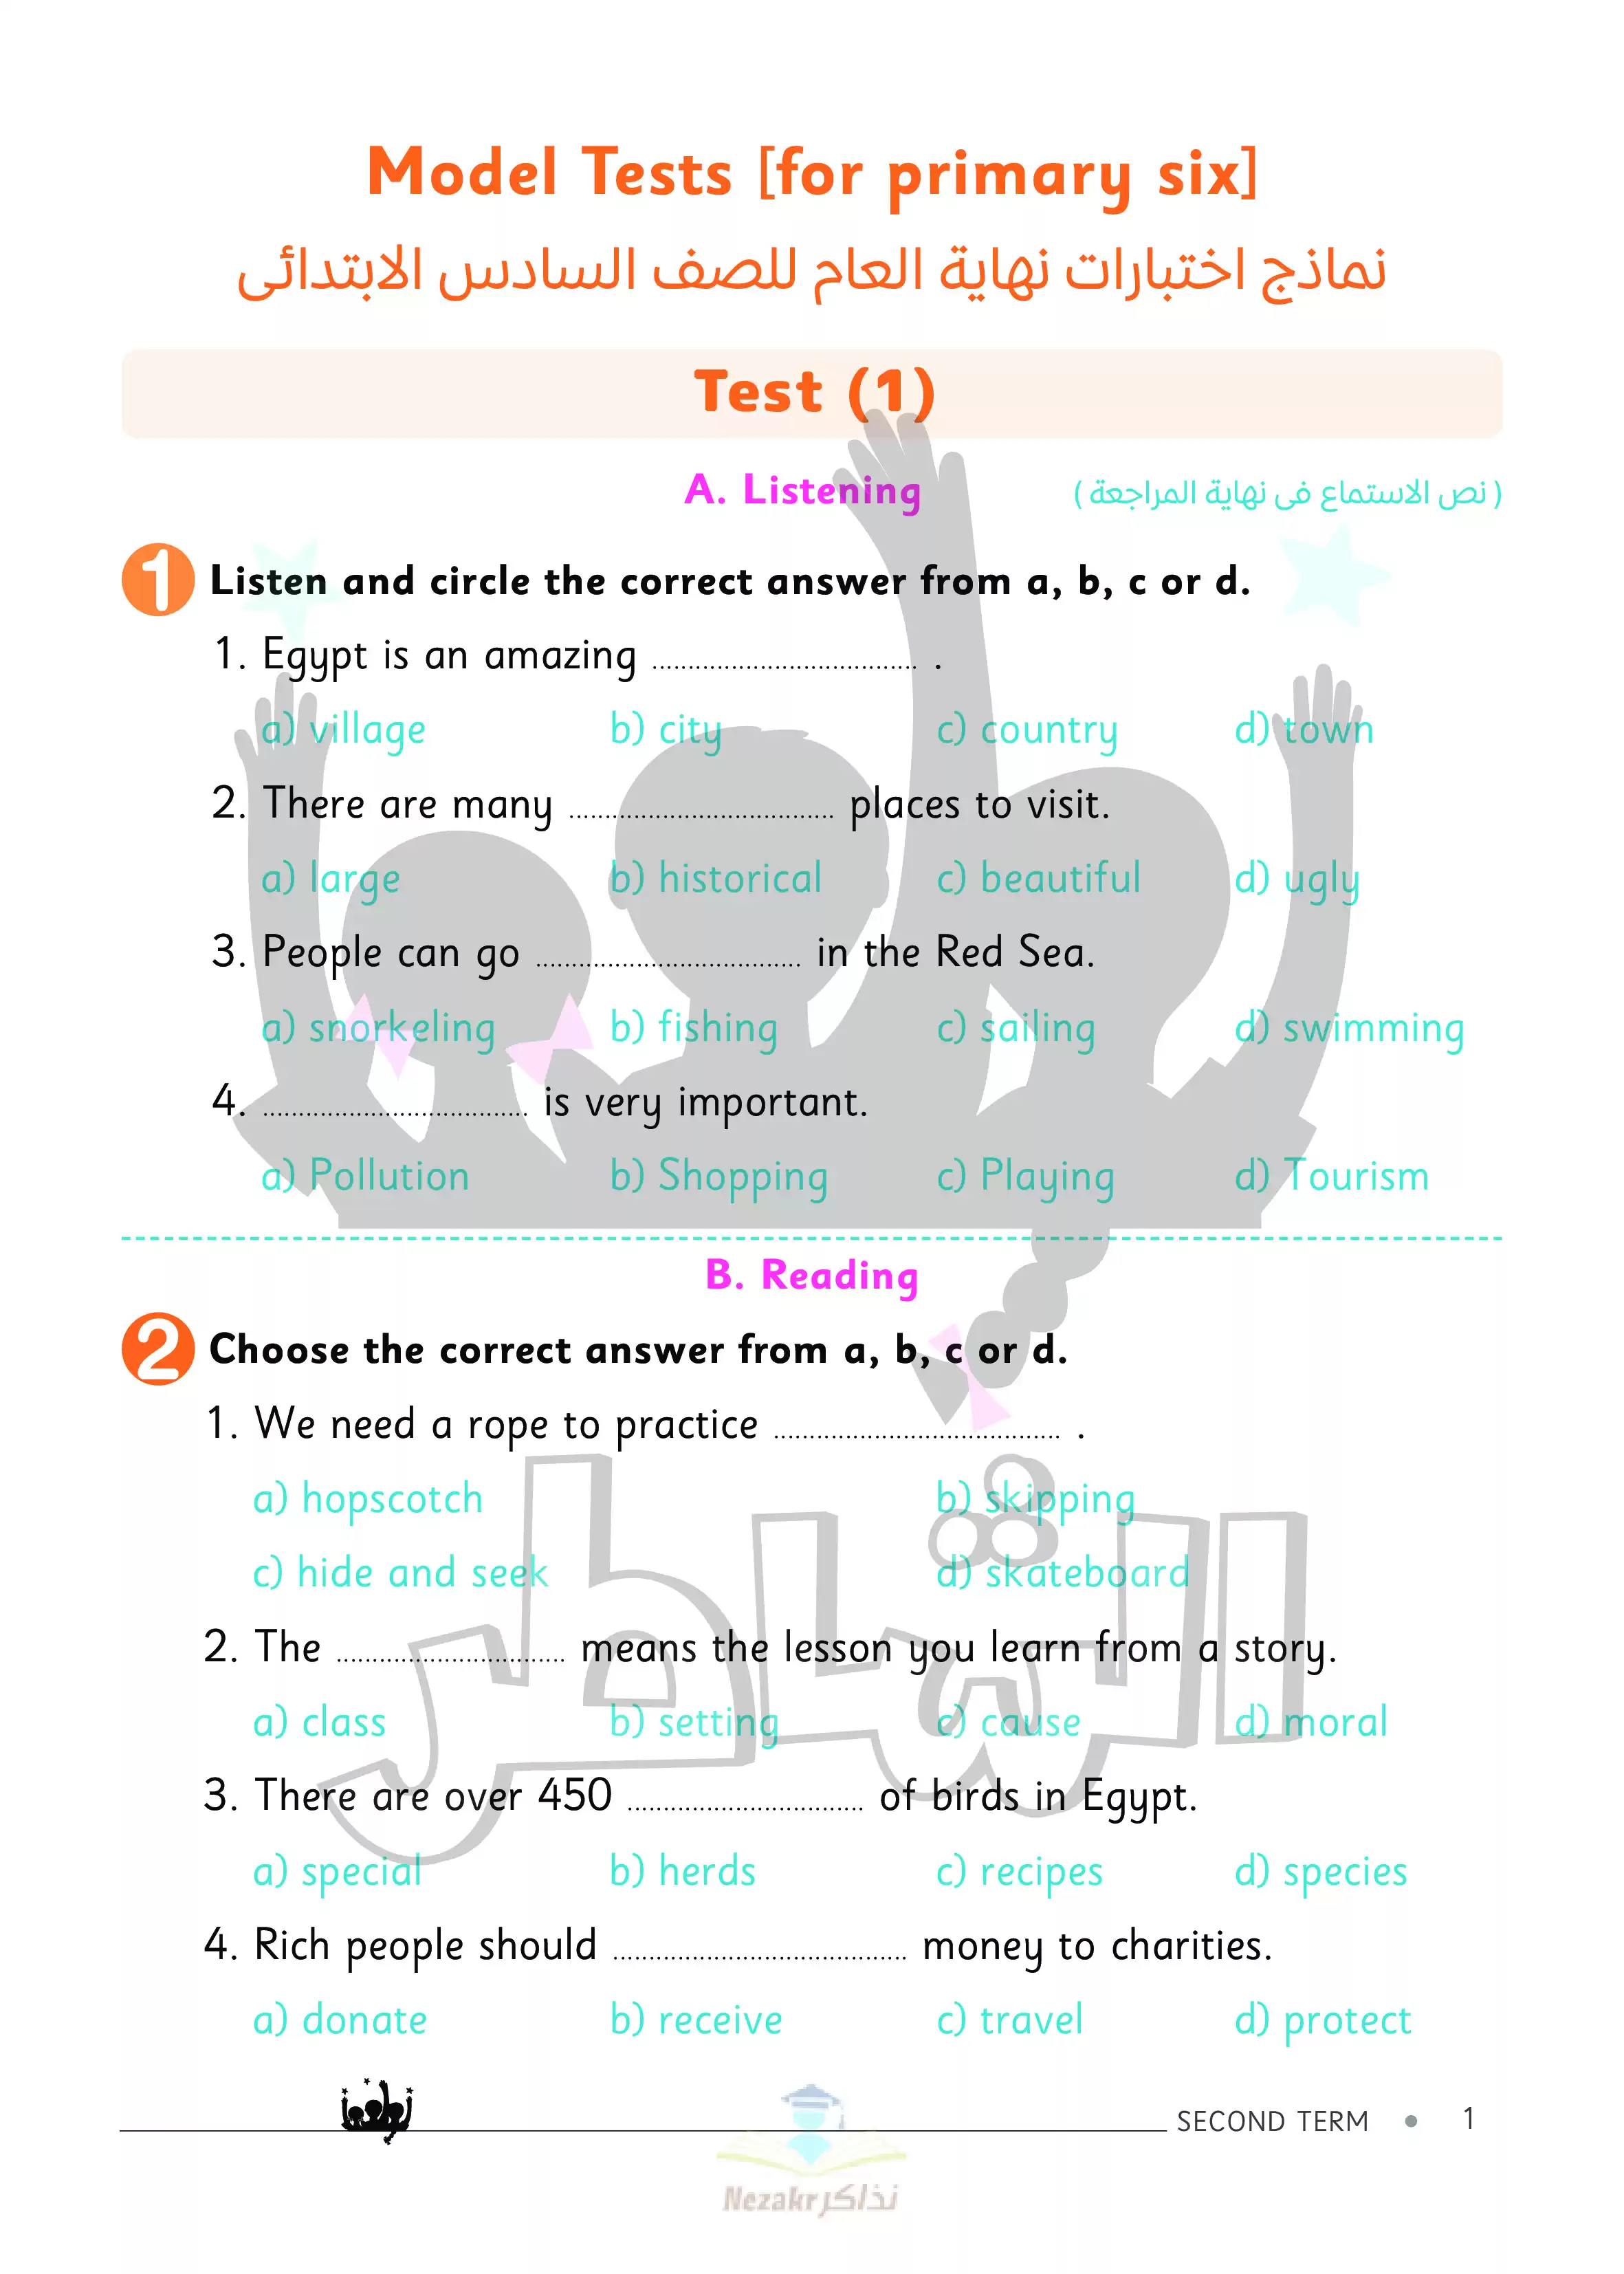 تحميل اختبارات الشاطر في اللغة الإنجليزية Connect6 للصف السادس الابتدائي الفصل الدراسي الثاني